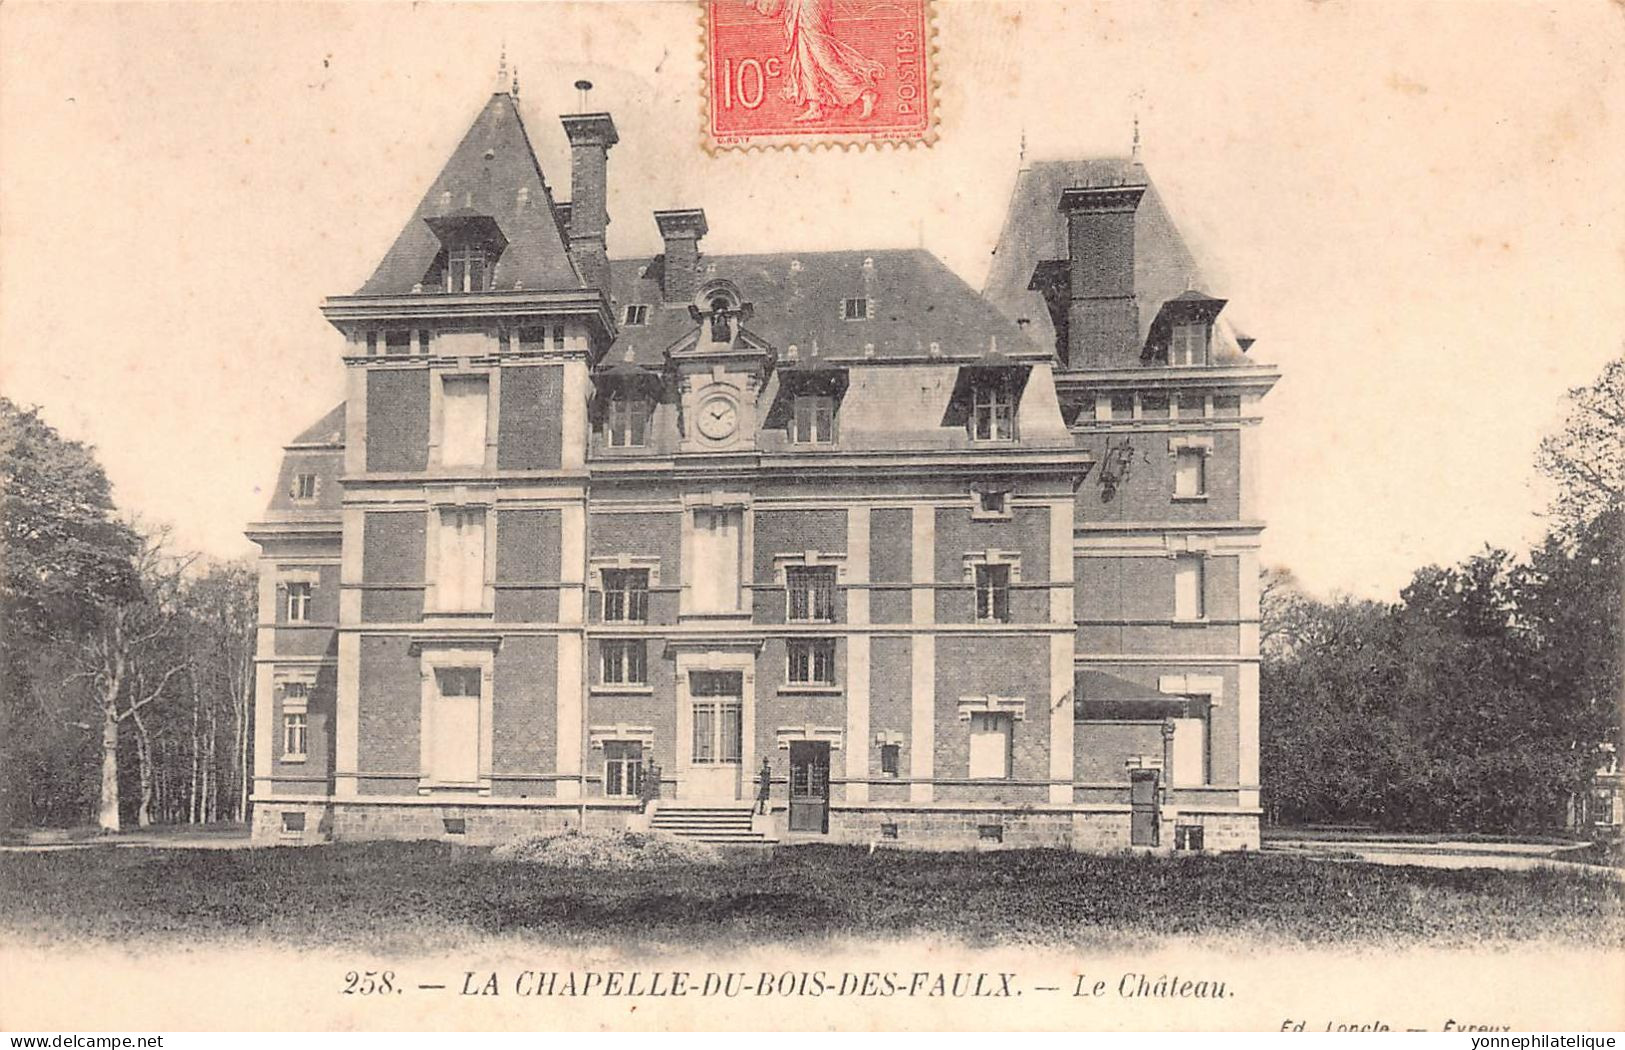 27 - EURE - Canton d'EVREUX - LOT de 16 CPA de châteaux - LOT 27-42G